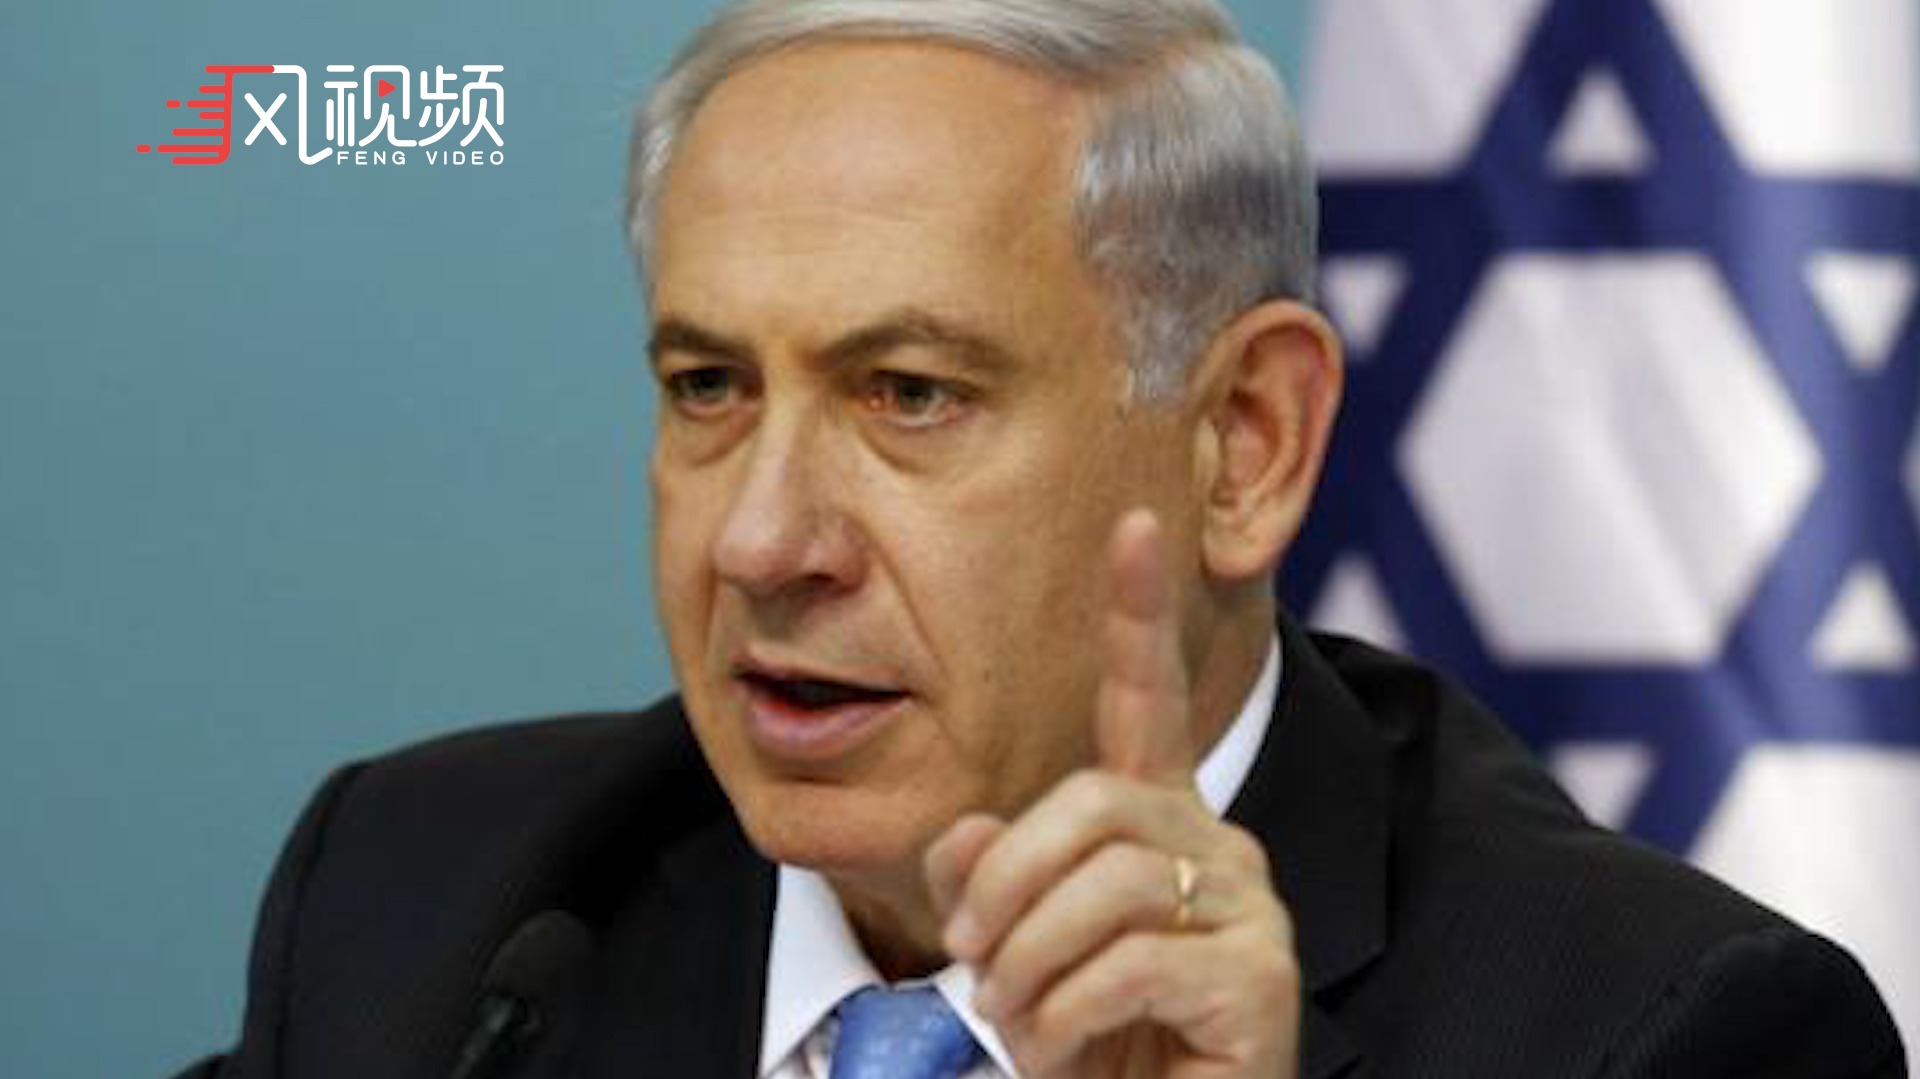 以色列政府拒绝加沙停火提议 誓言将战斗到底直至最终胜利